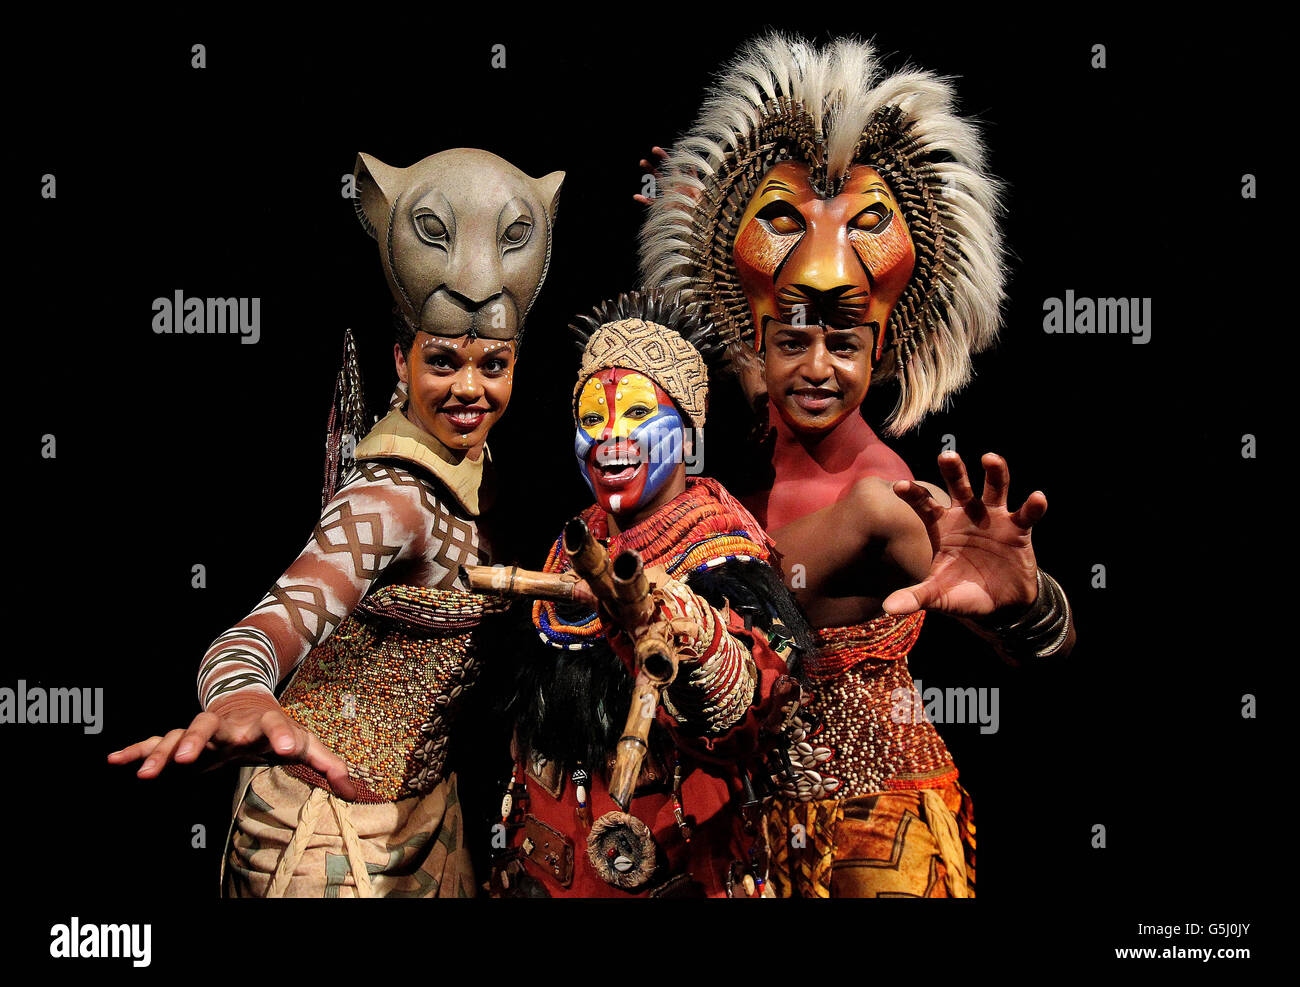 El rey leon musical fotografías e imágenes de alta resolución - Alamy